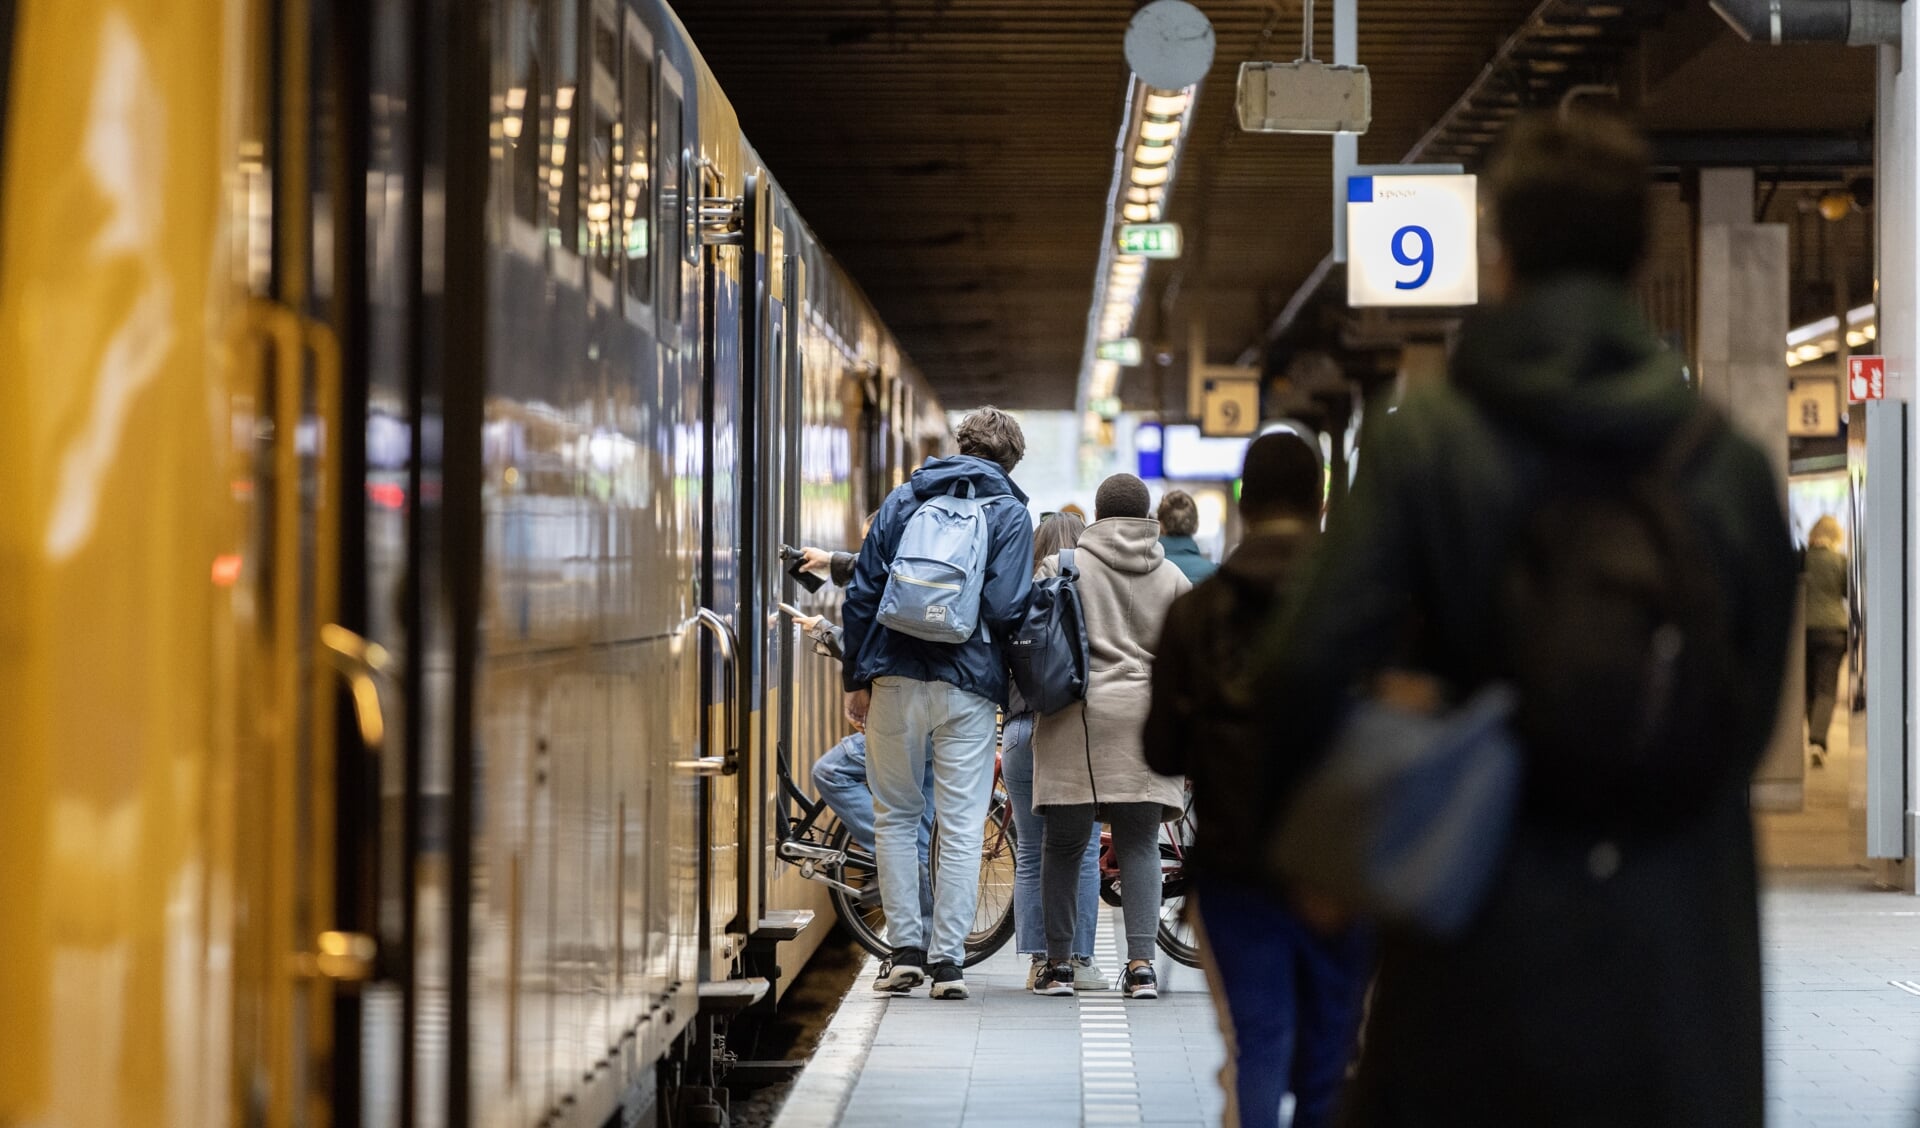 Voor chronisch zieken en mensen met een verstandelijke beperking is het al lastig om met de trein te reizen, omdat zij vaak hulp nodig hebben met het in- en uitstappen. Maar door het huidige personeelstekort in de treinen wordt het reizen voor hen nu nog moeilijker